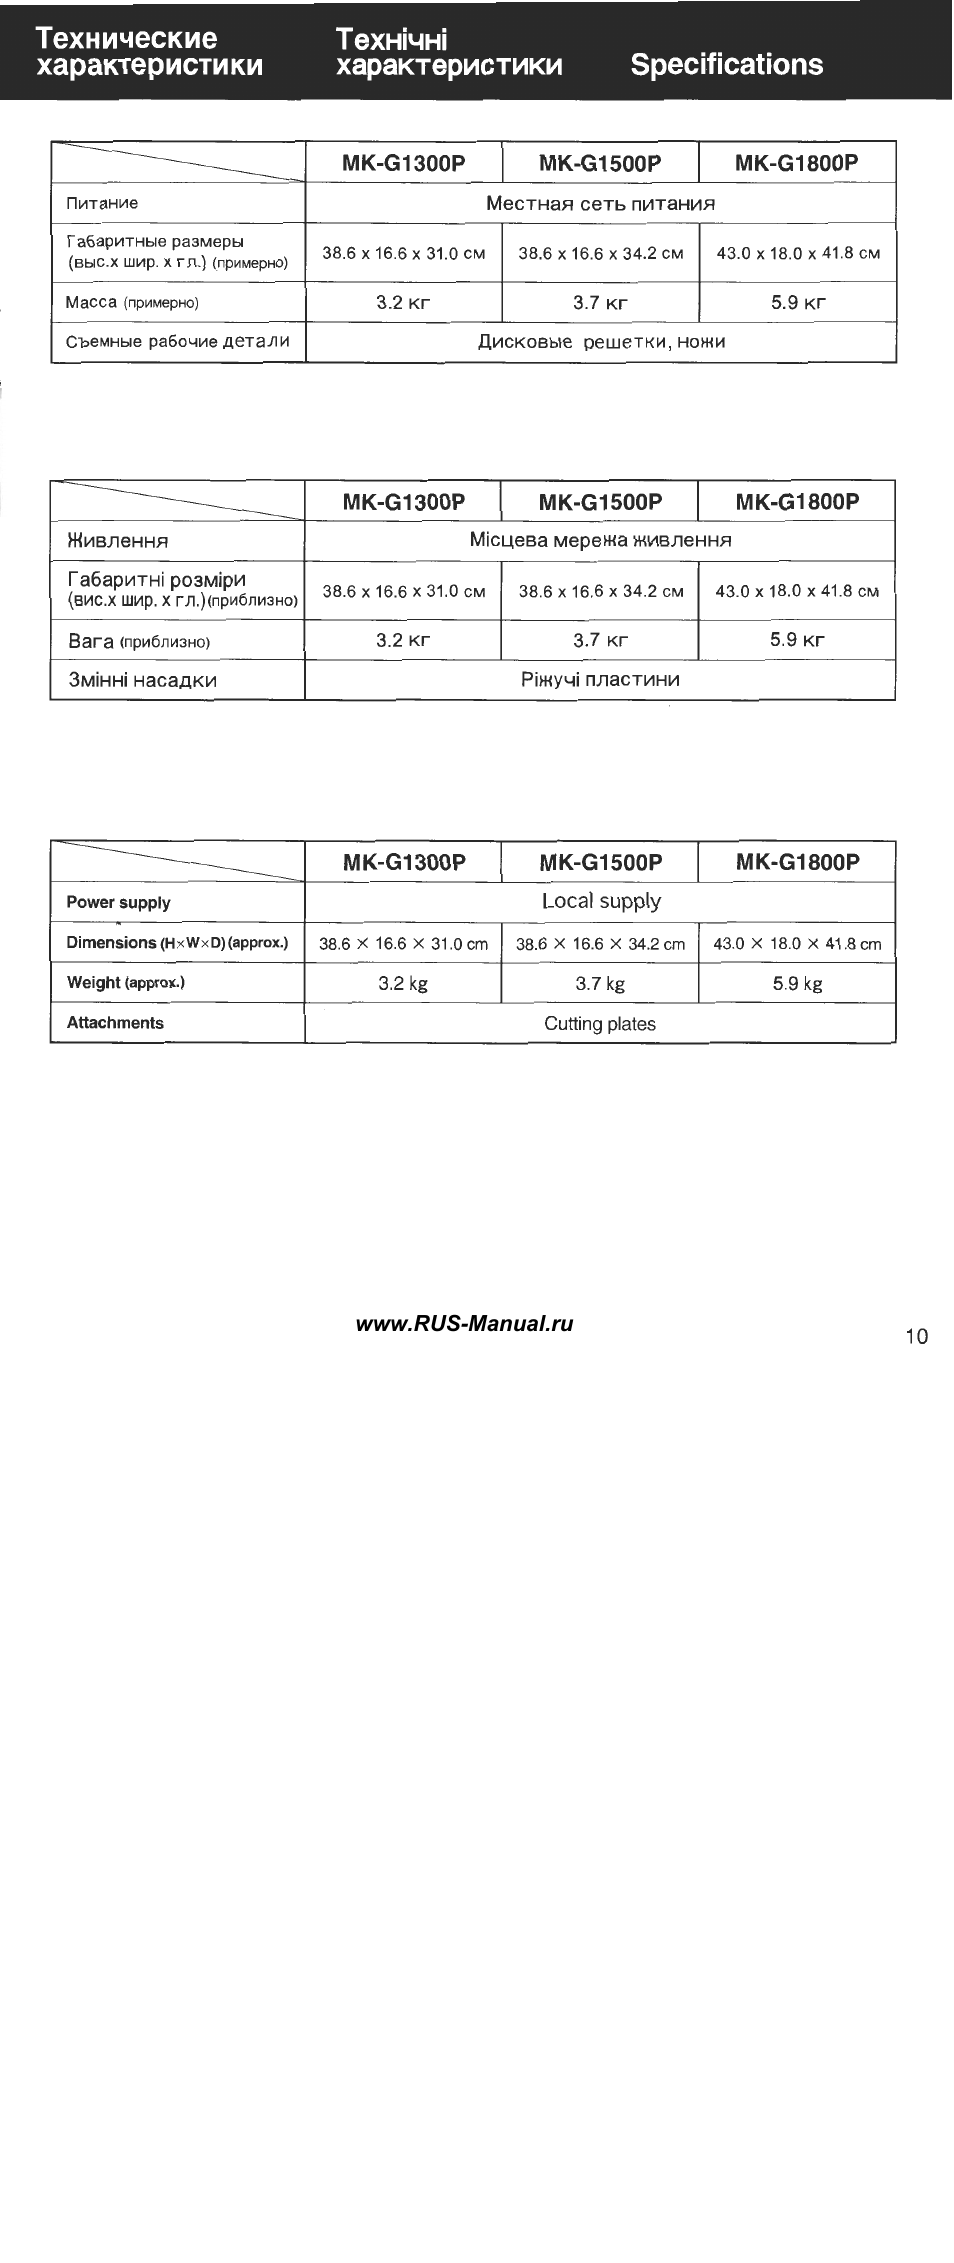 Технические, Характеристики, Texhì4hì | Инструкция по эксплуатации Panasonic MK-G1500P | Страница 11 / 12